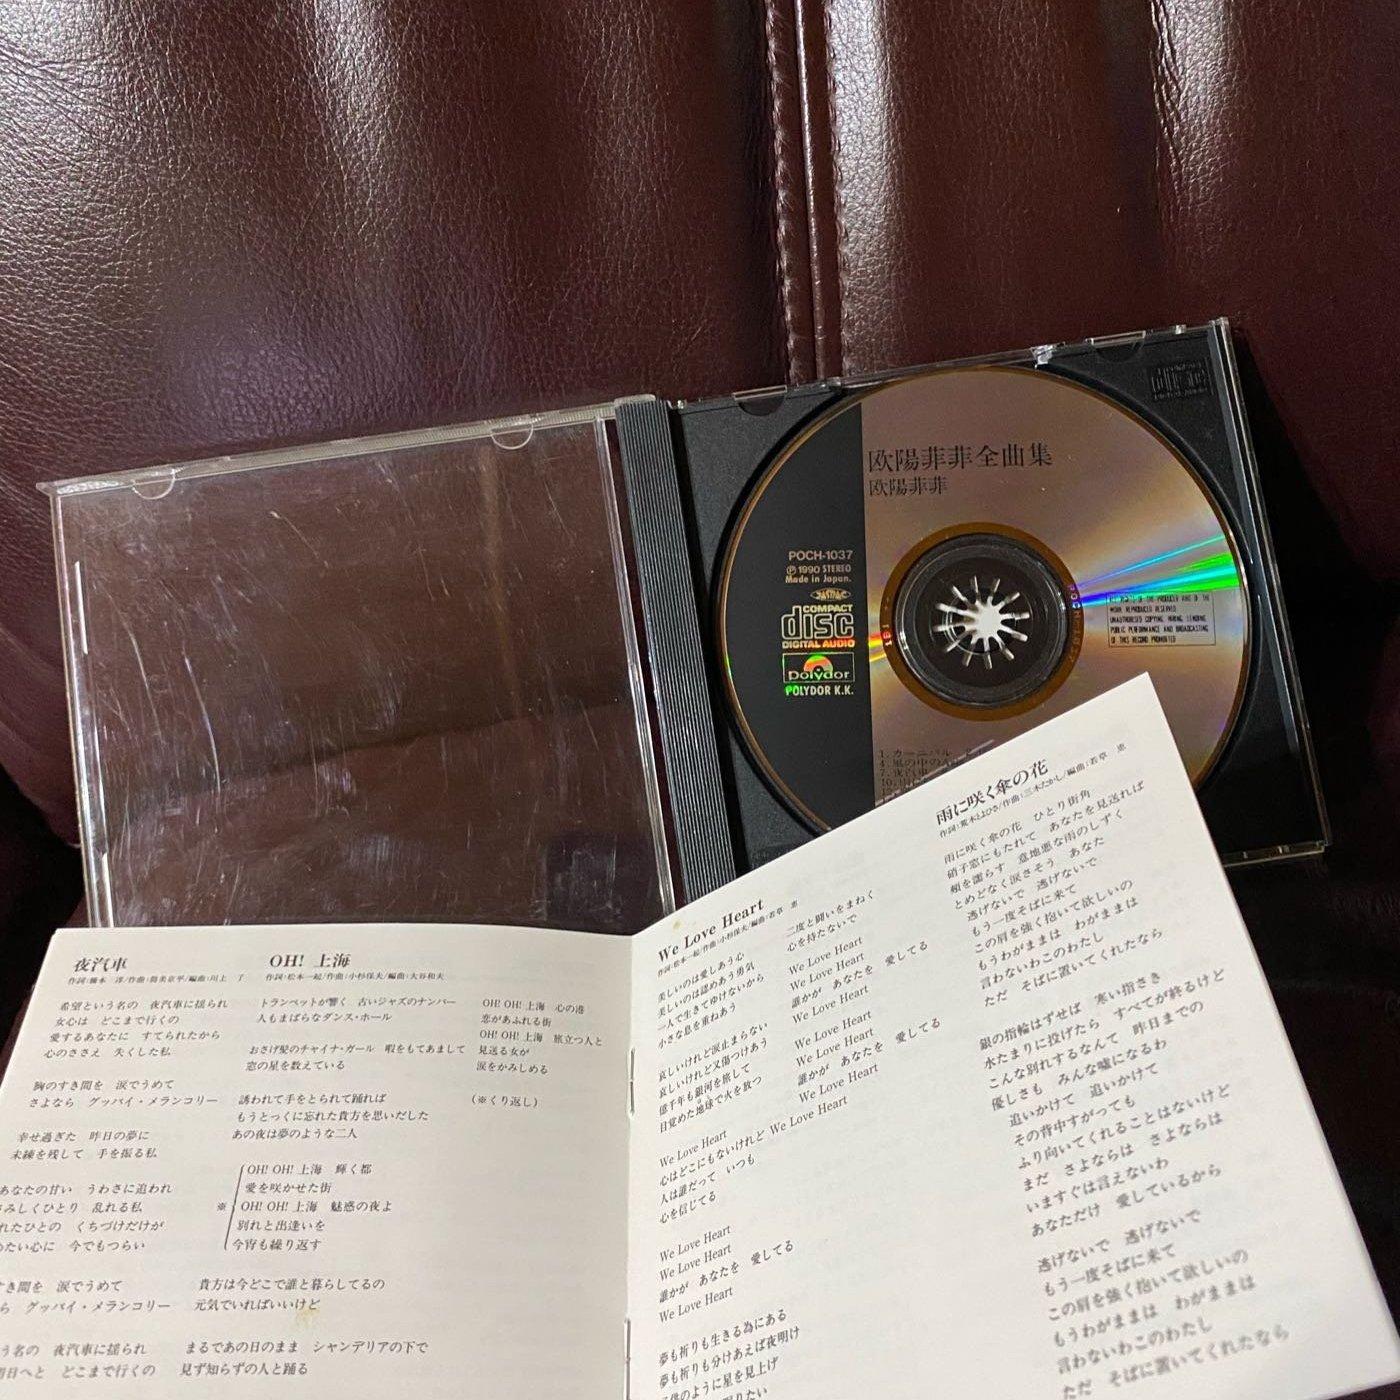 歐陽菲菲日本版cd85 新讀取正常請安心下標 Yahoo奇摩拍賣